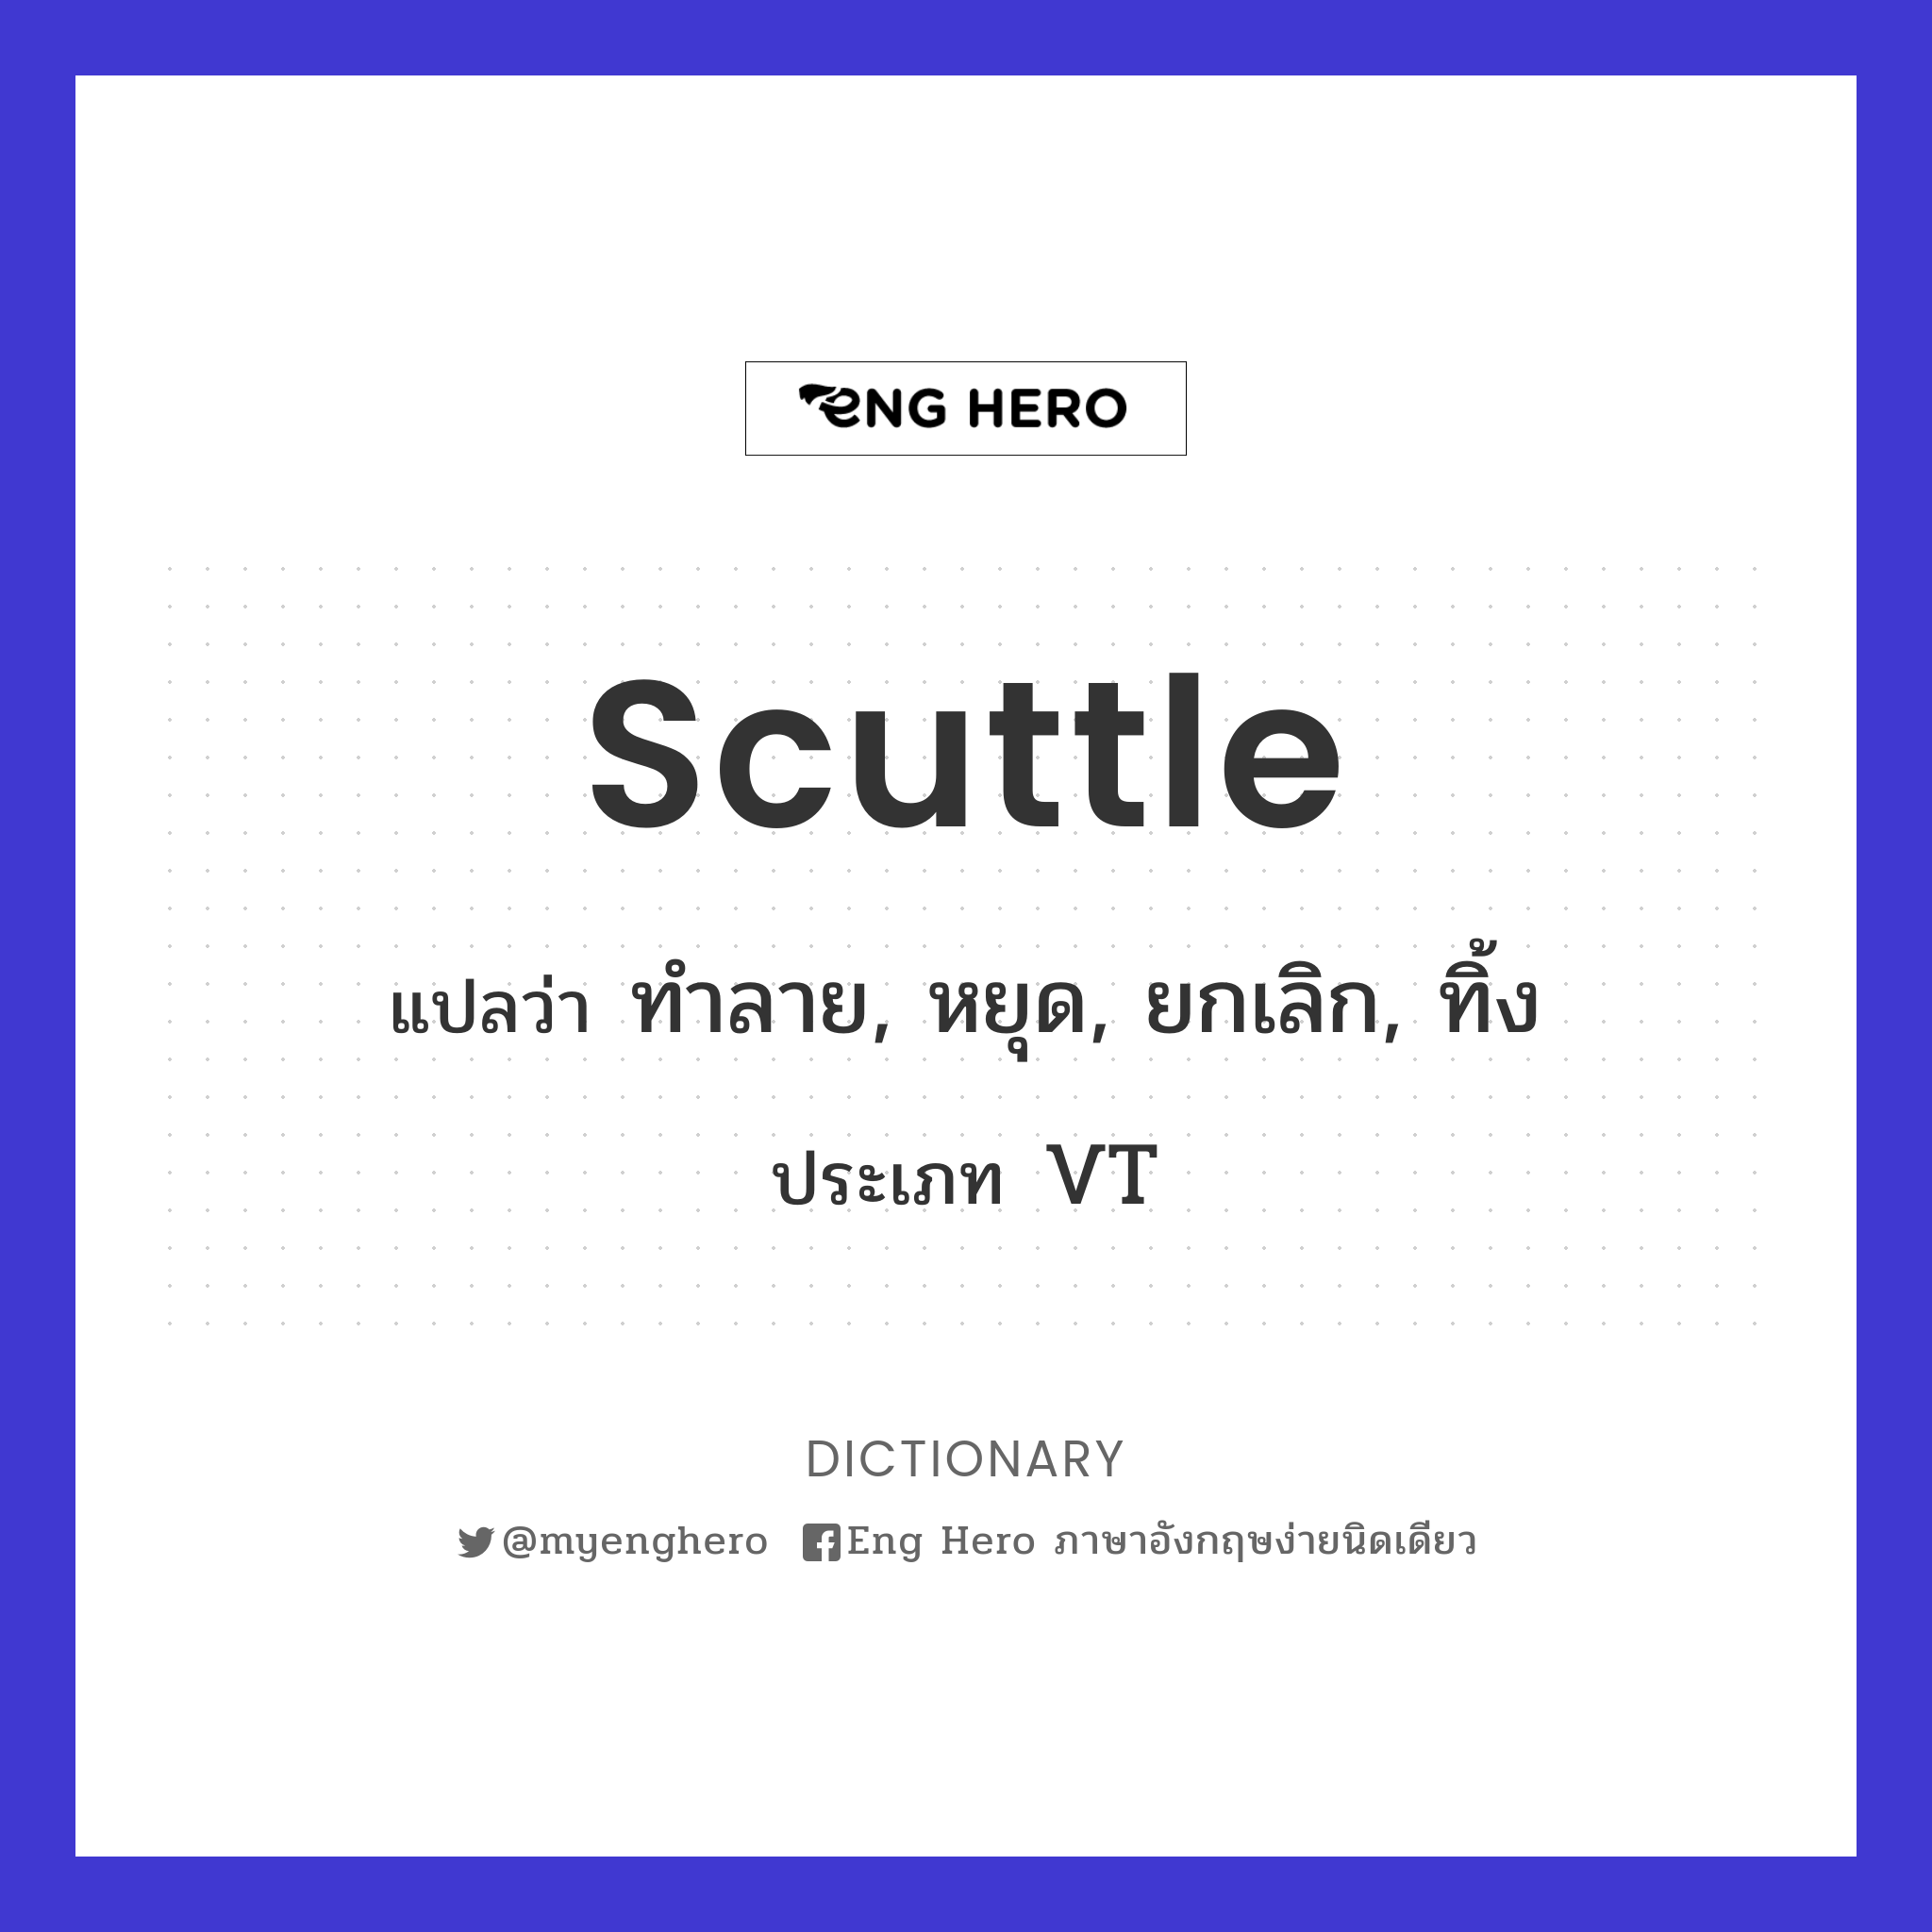 scuttle